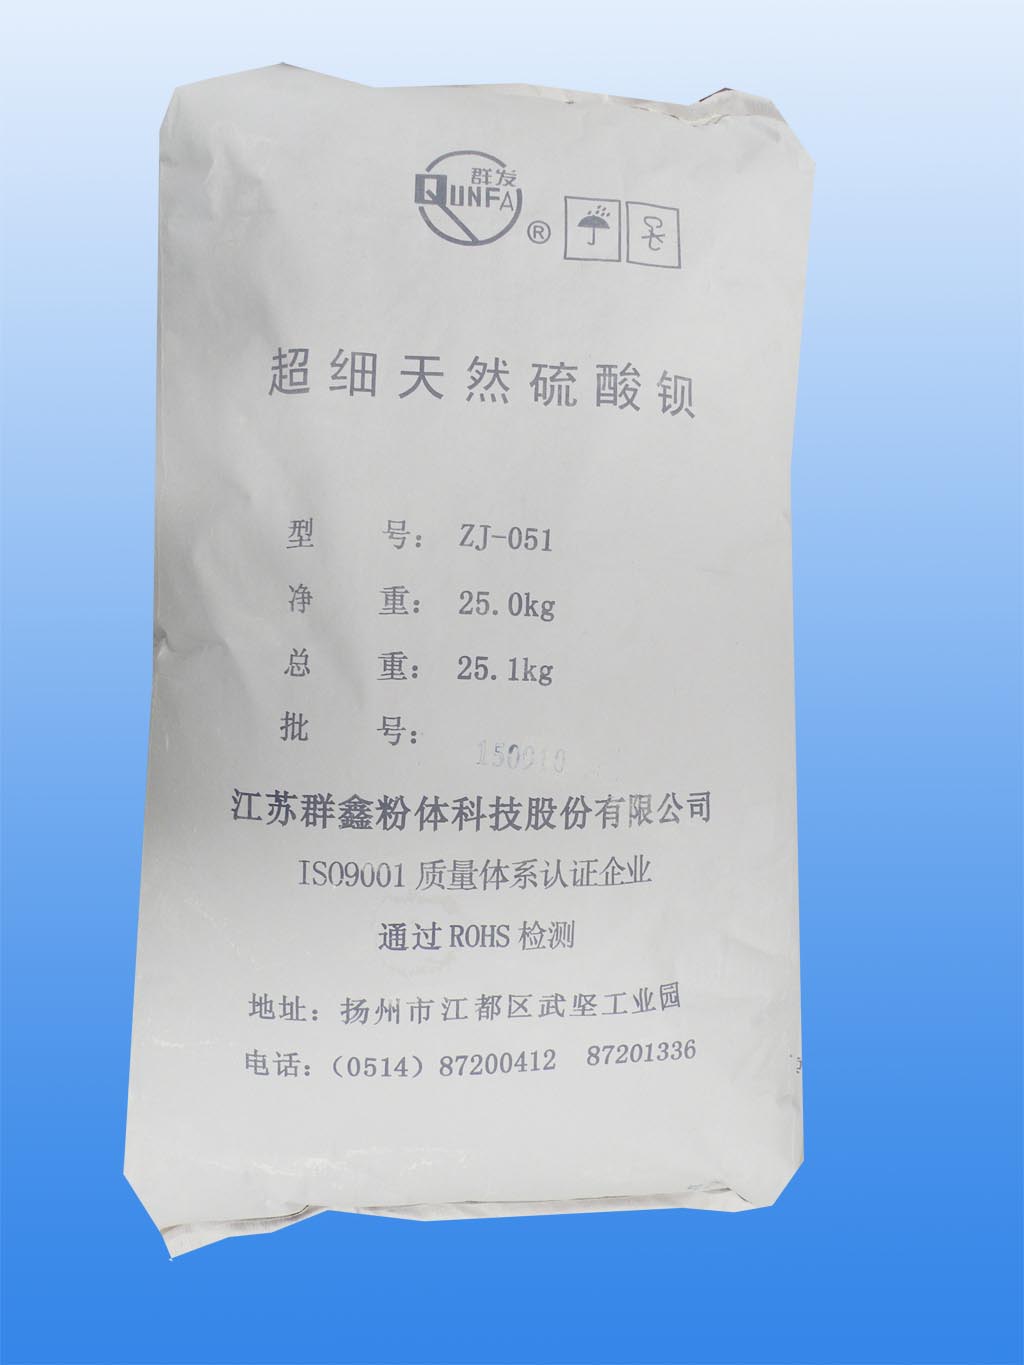 Superficial treatment barium sulfate